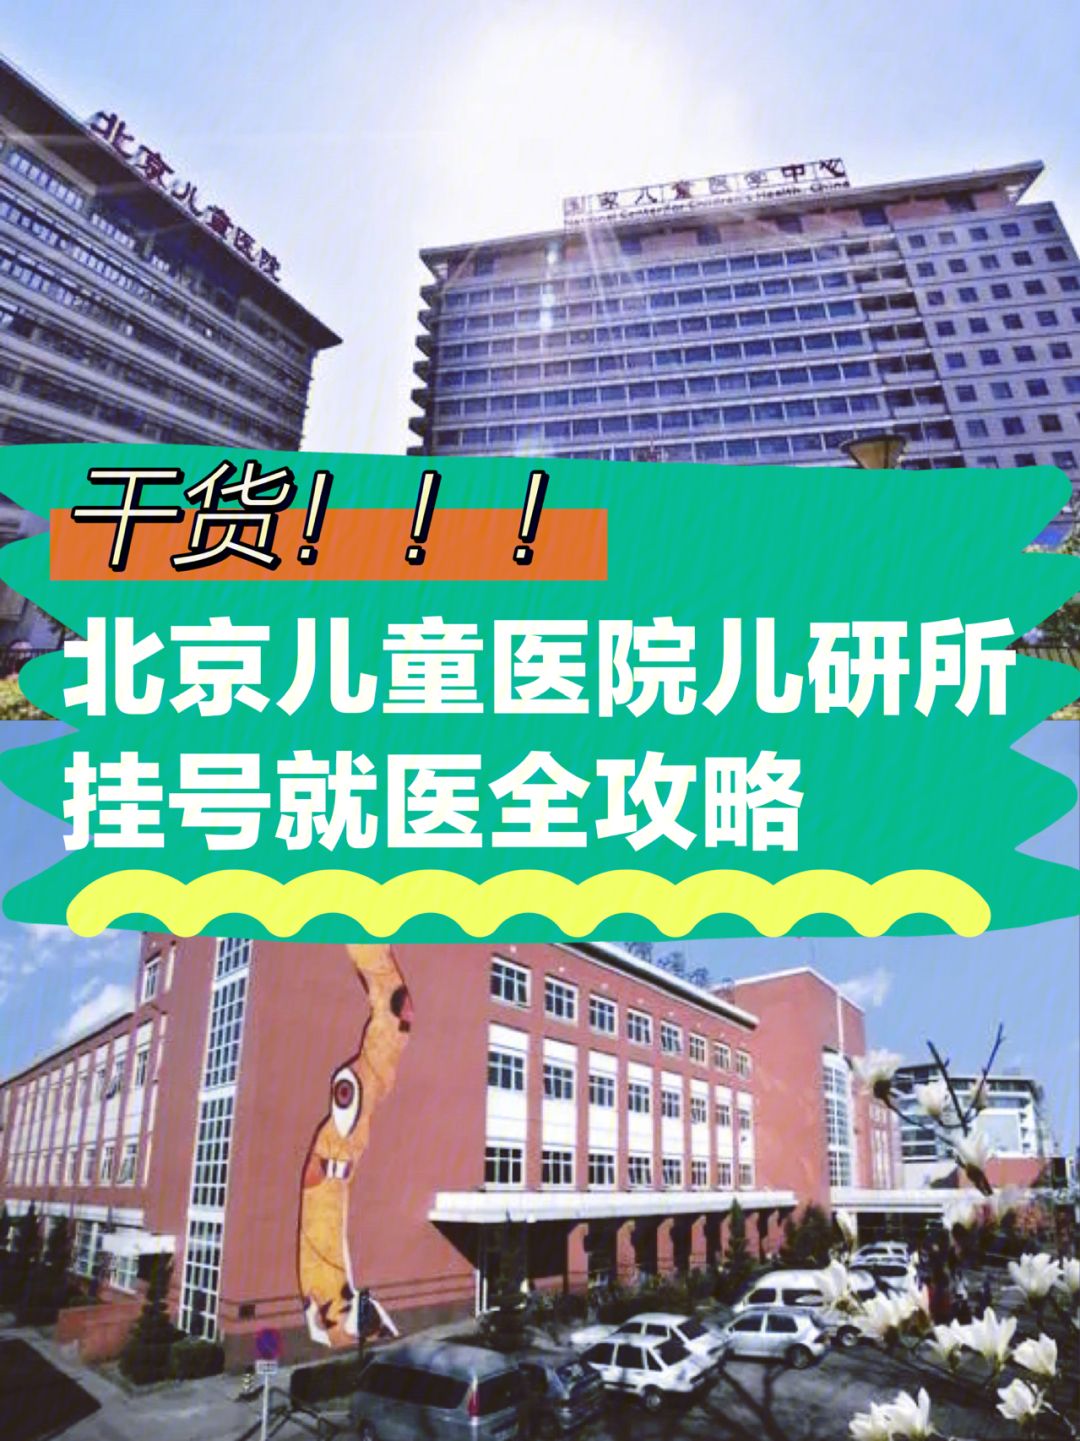 关于武警四川省消防总队医院医院代诊预约挂号，助您医路轻松的信息